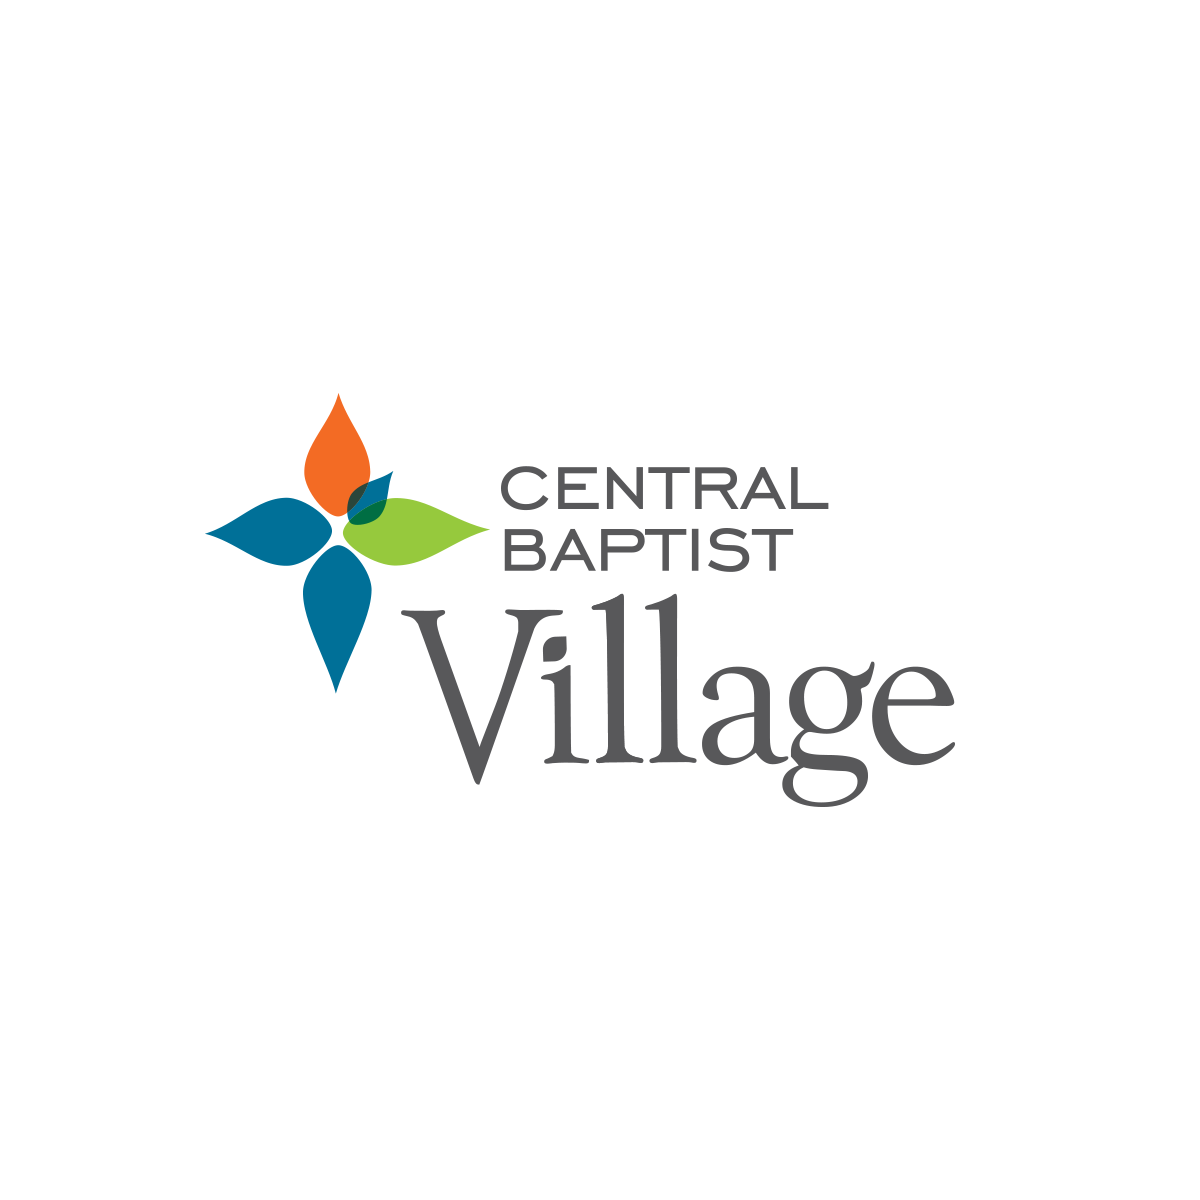 Central Baptist Village: Home - Norridge